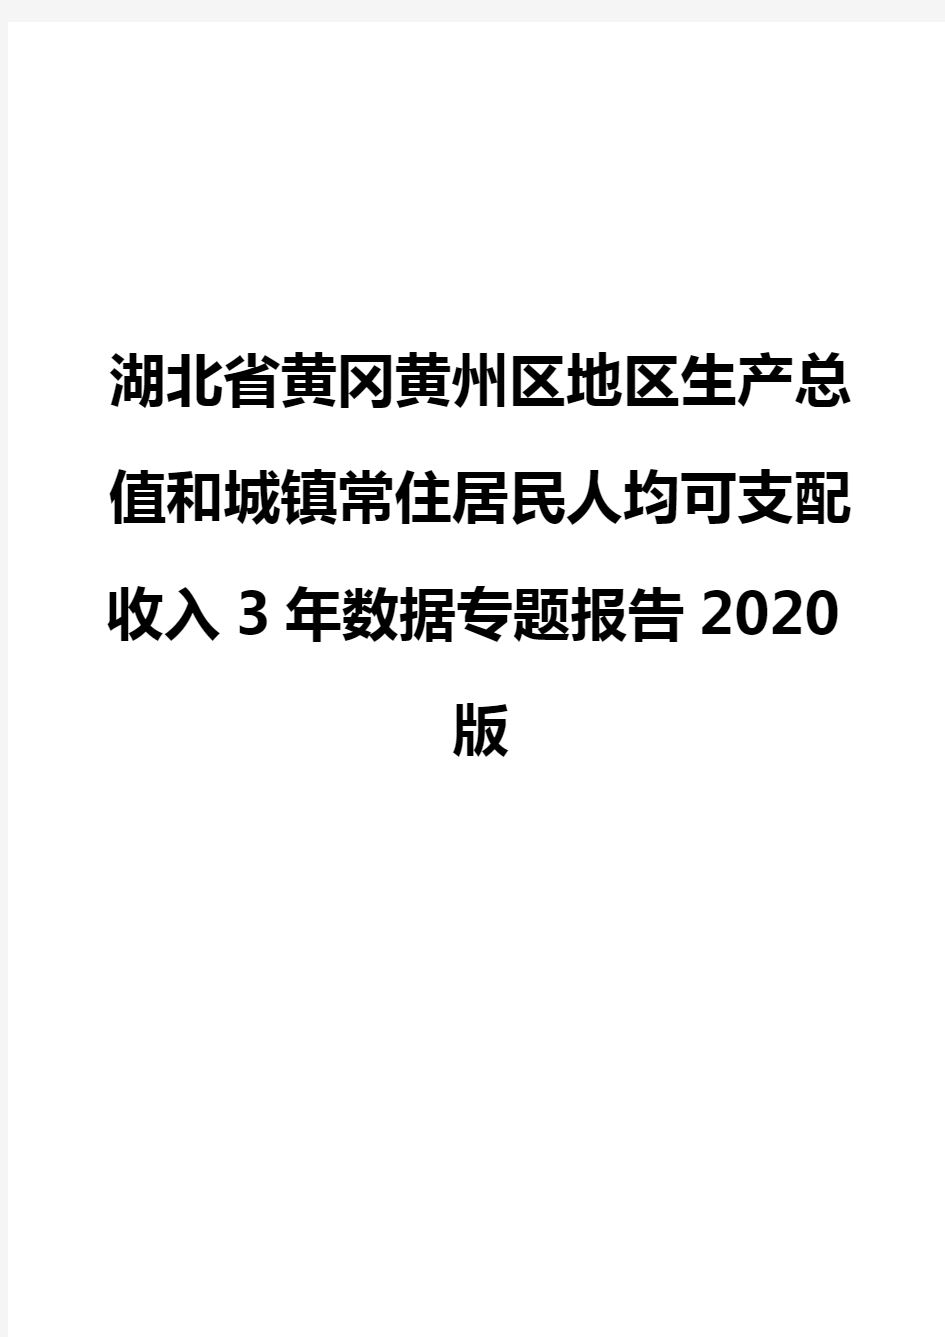 湖北省黄冈黄州区地区生产总值和城镇常住居民人均可支配收入3年数据专题报告2020版